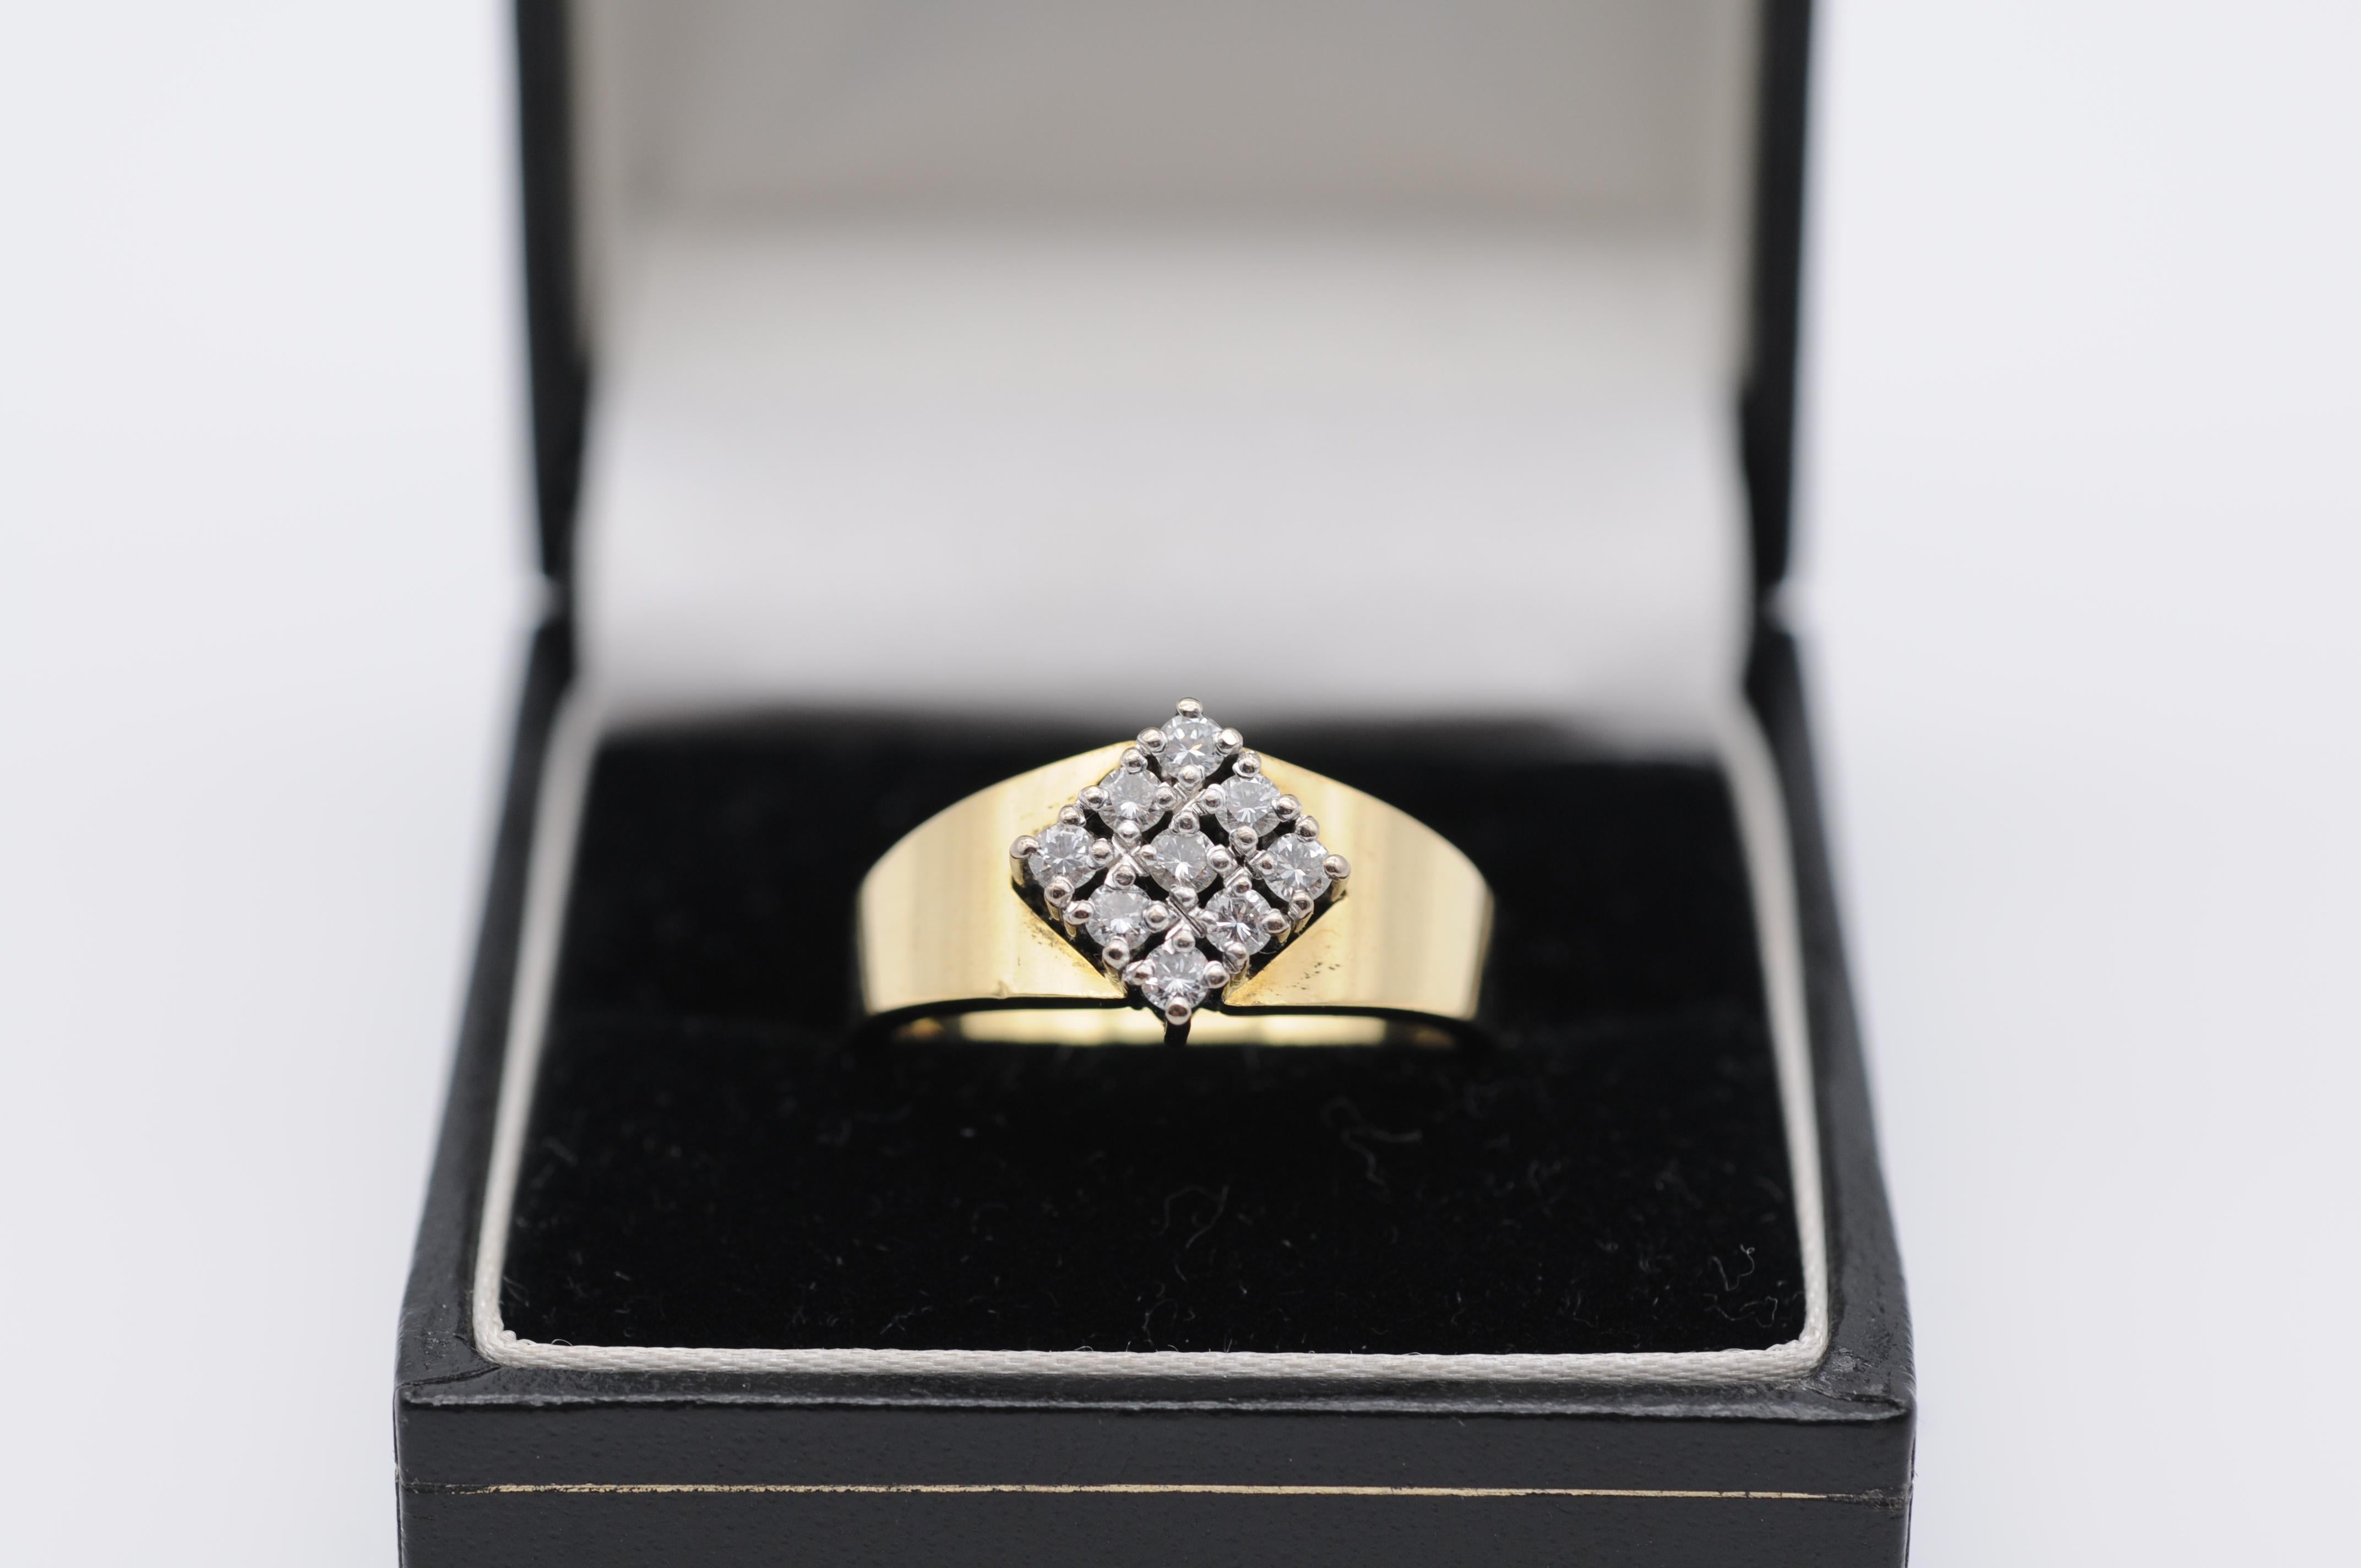 Dieser atemberaubende Diamantring ist ein wahres Symbol für Eleganz und Raffinesse. Dieser Ring aus 18 Karat Gelbgold ist mit einem wunderschön geschliffenen Diamanten in Form eines Diamanten versehen, der in einer Zackenfassung gefasst ist. Der